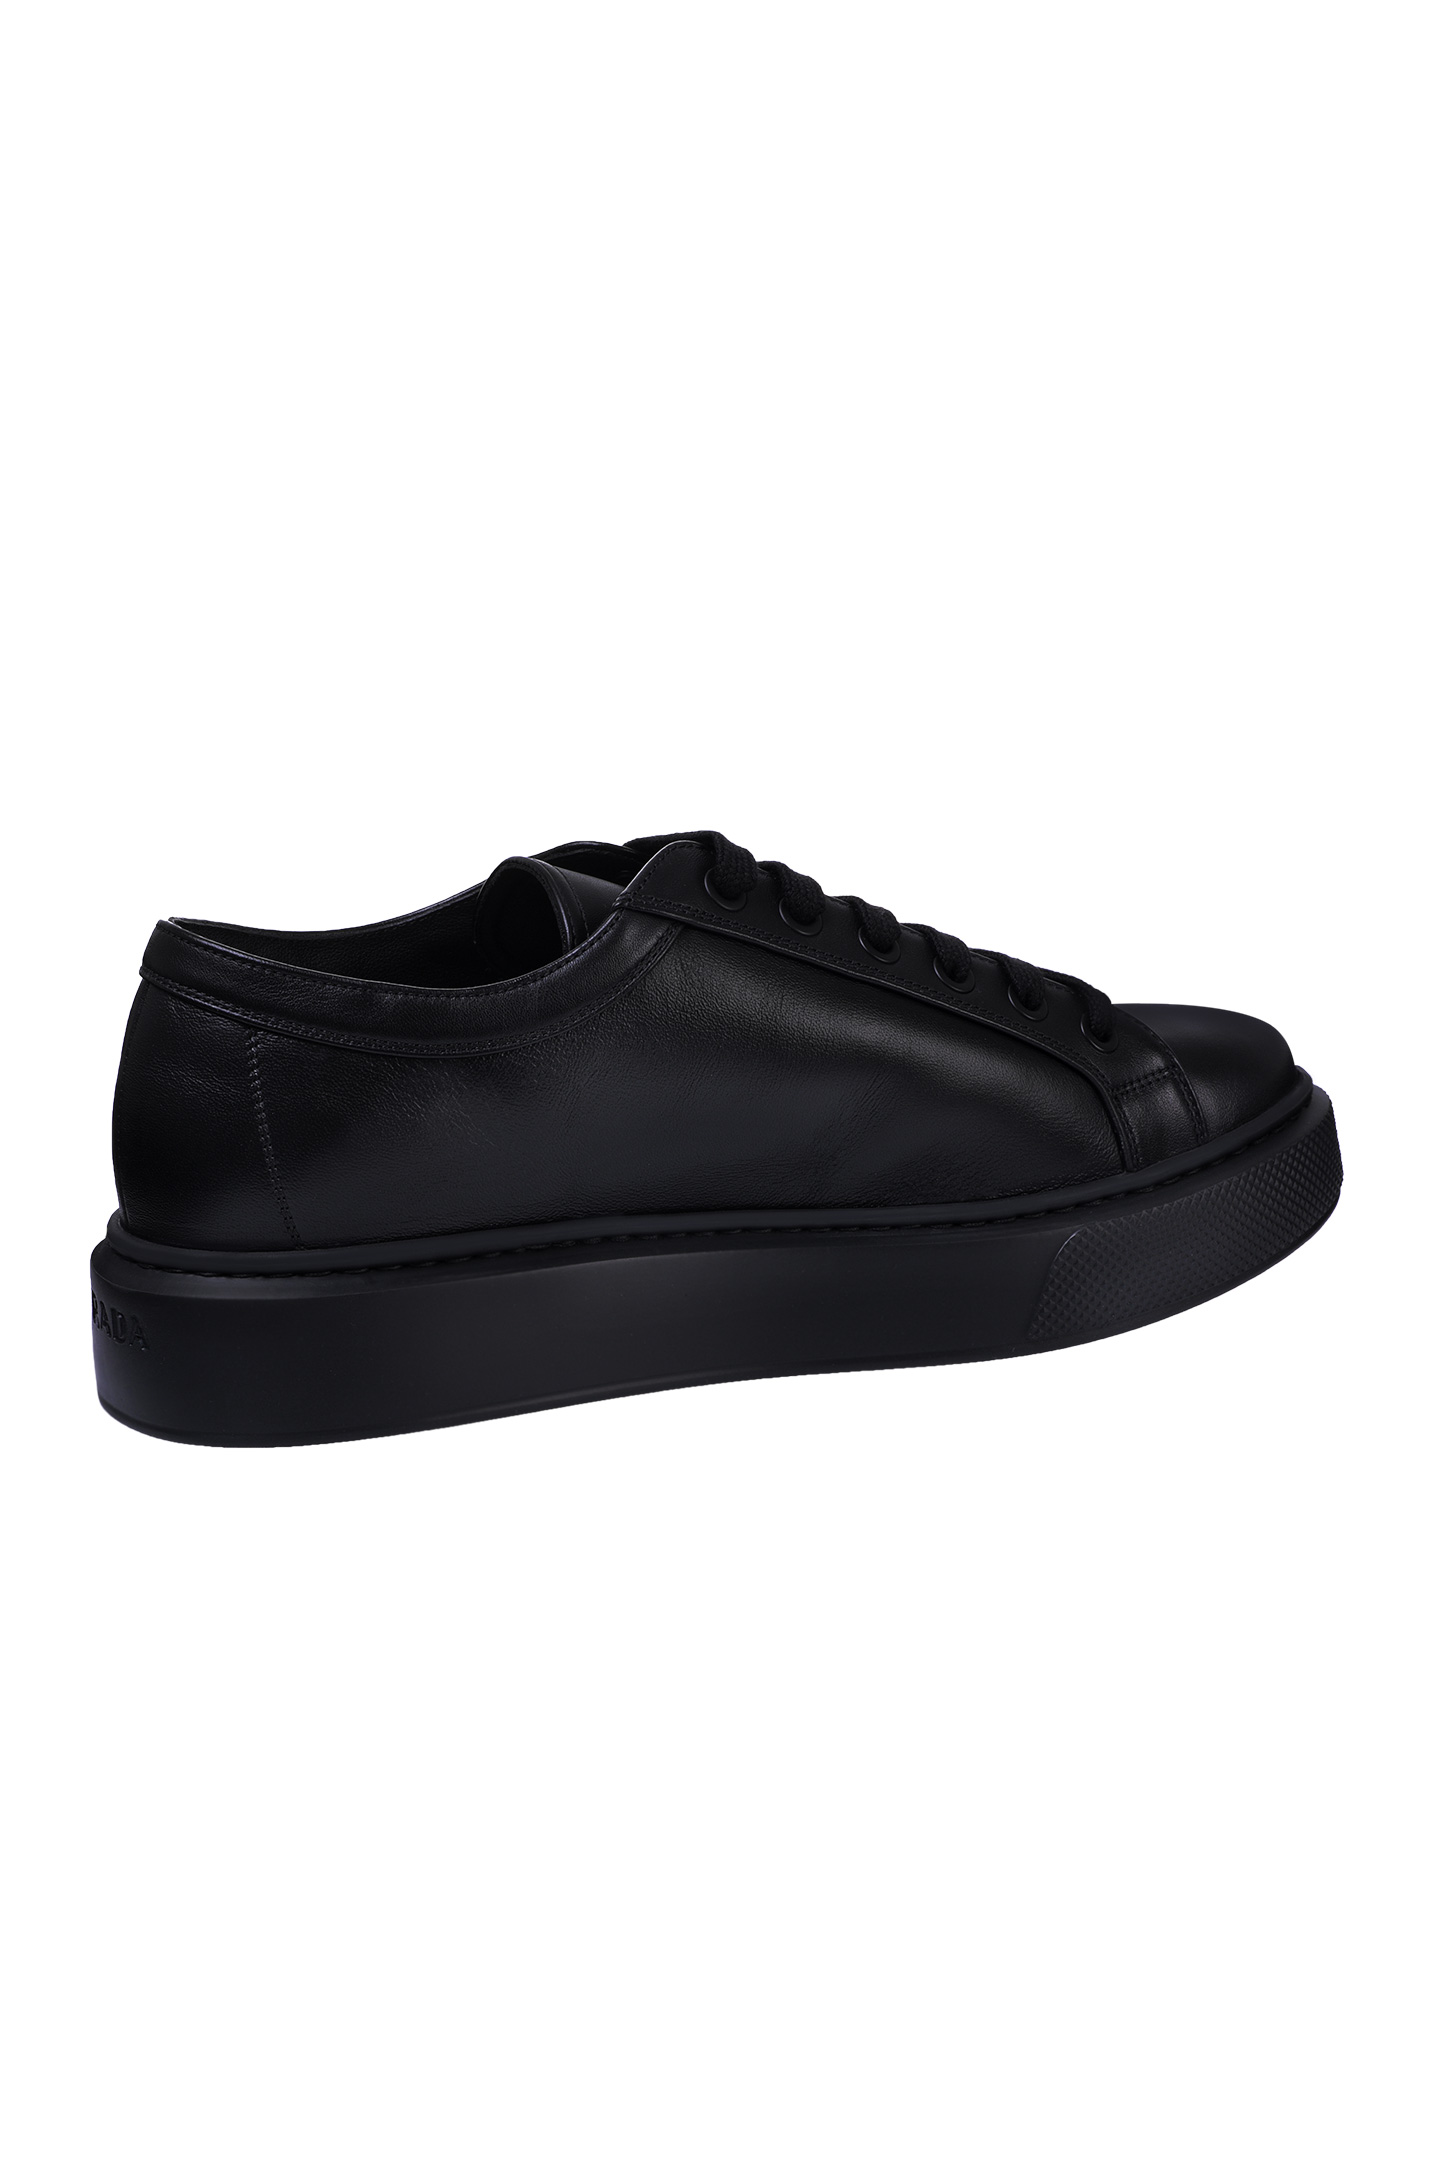 Ботинки PRADA 4E3560 A21, цвет: Черный, Мужской